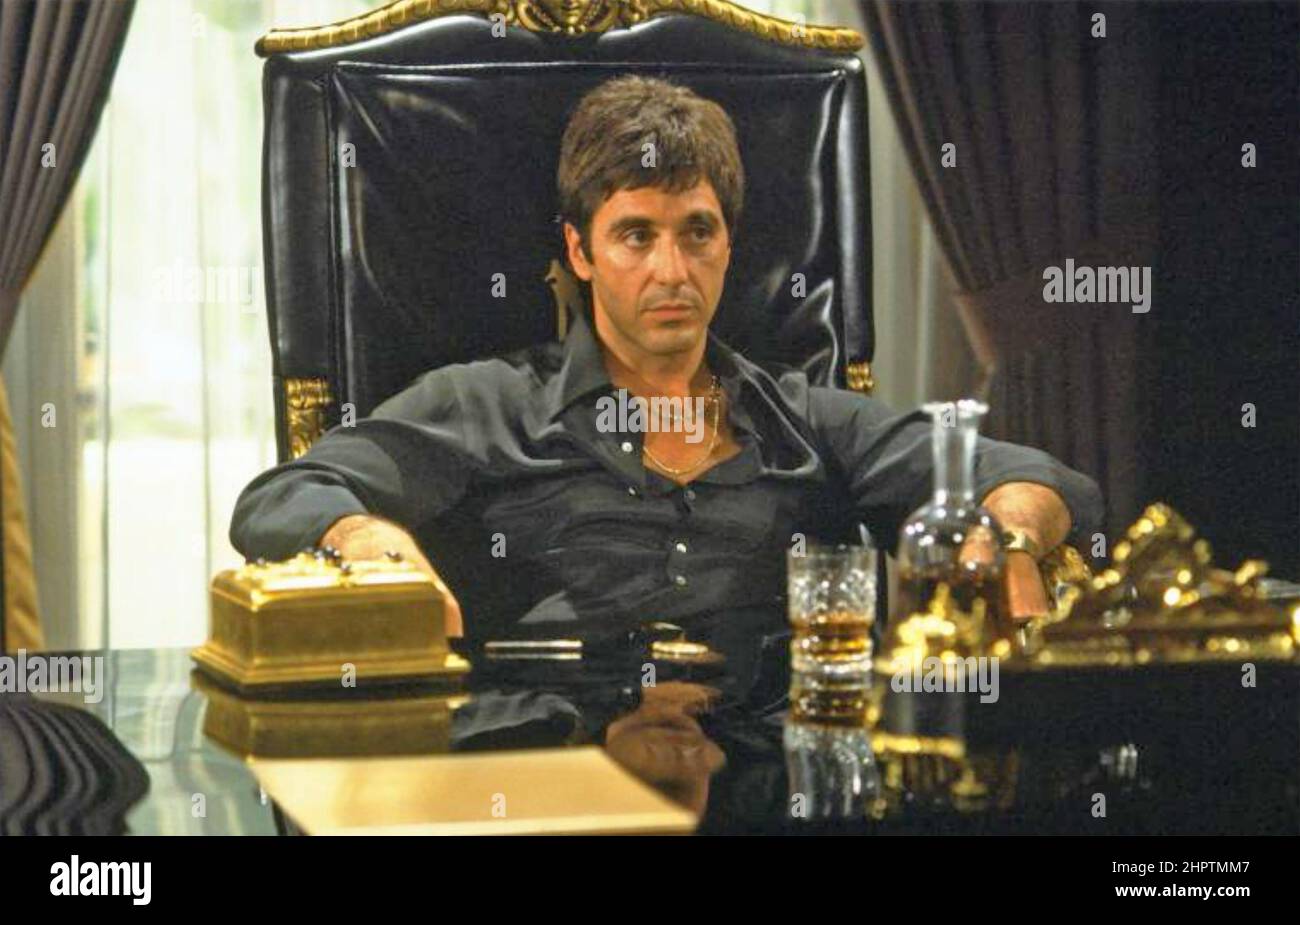 SCARFACE 1983 Universal Pictures film con al Pacino come boss della droga cubana Tony Montana Foto Stock